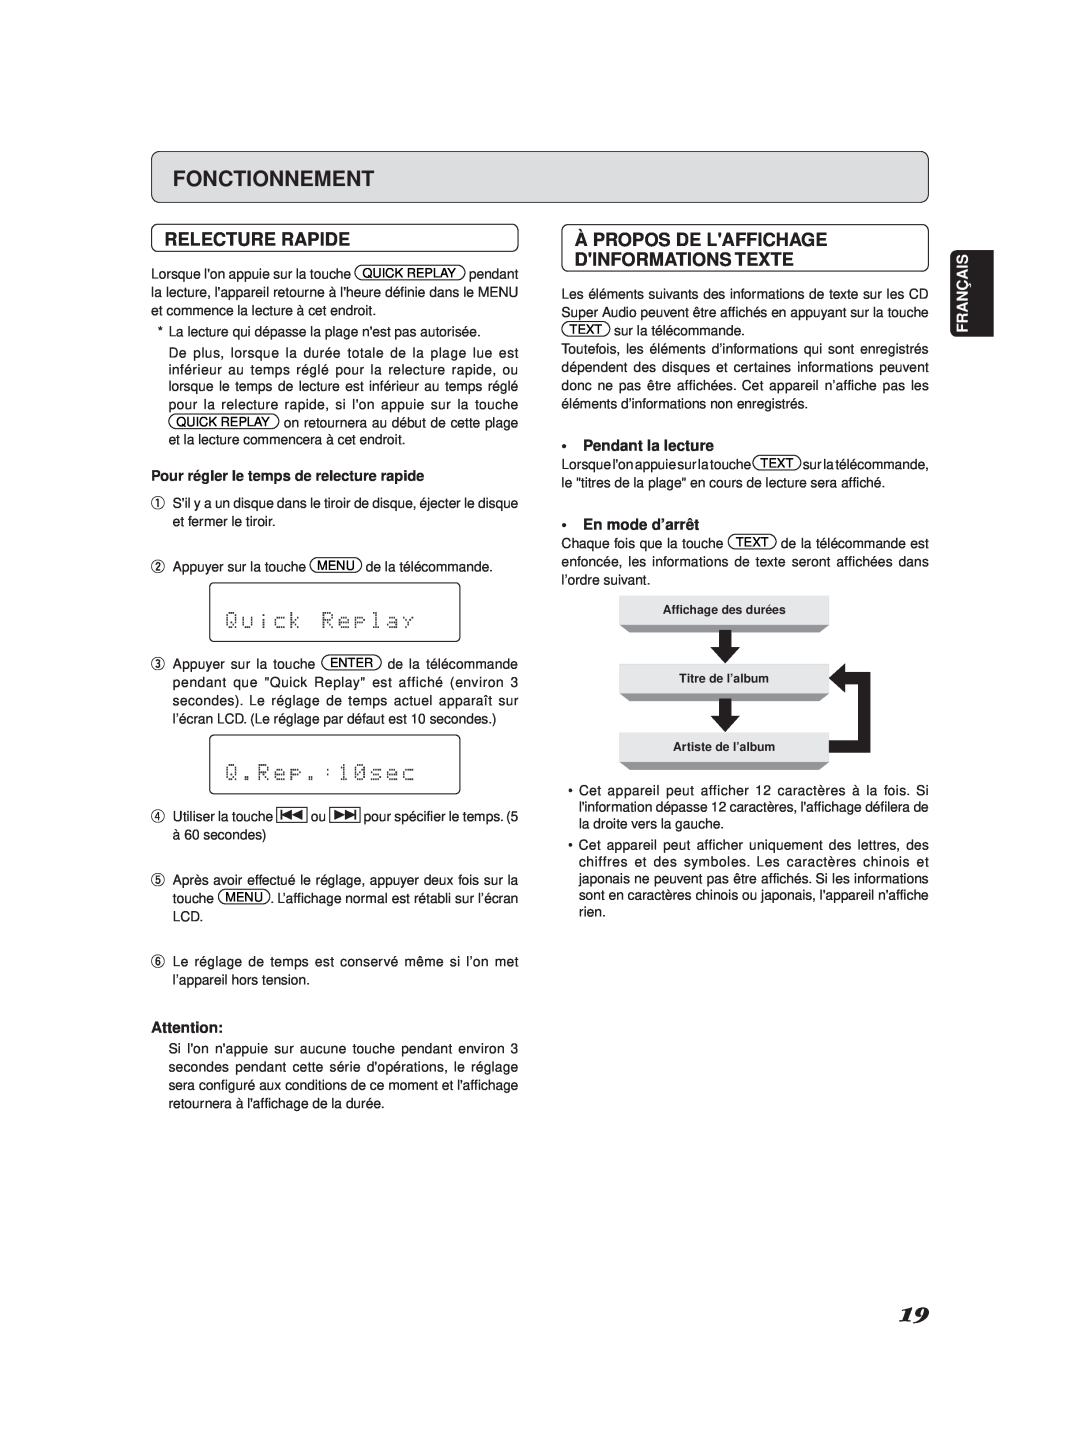 Marantz SA-11S2 Relecture Rapide, Àpropos De Laffichage Dinformations Texte, Fonctionnement, Pendant la lecture, Français 